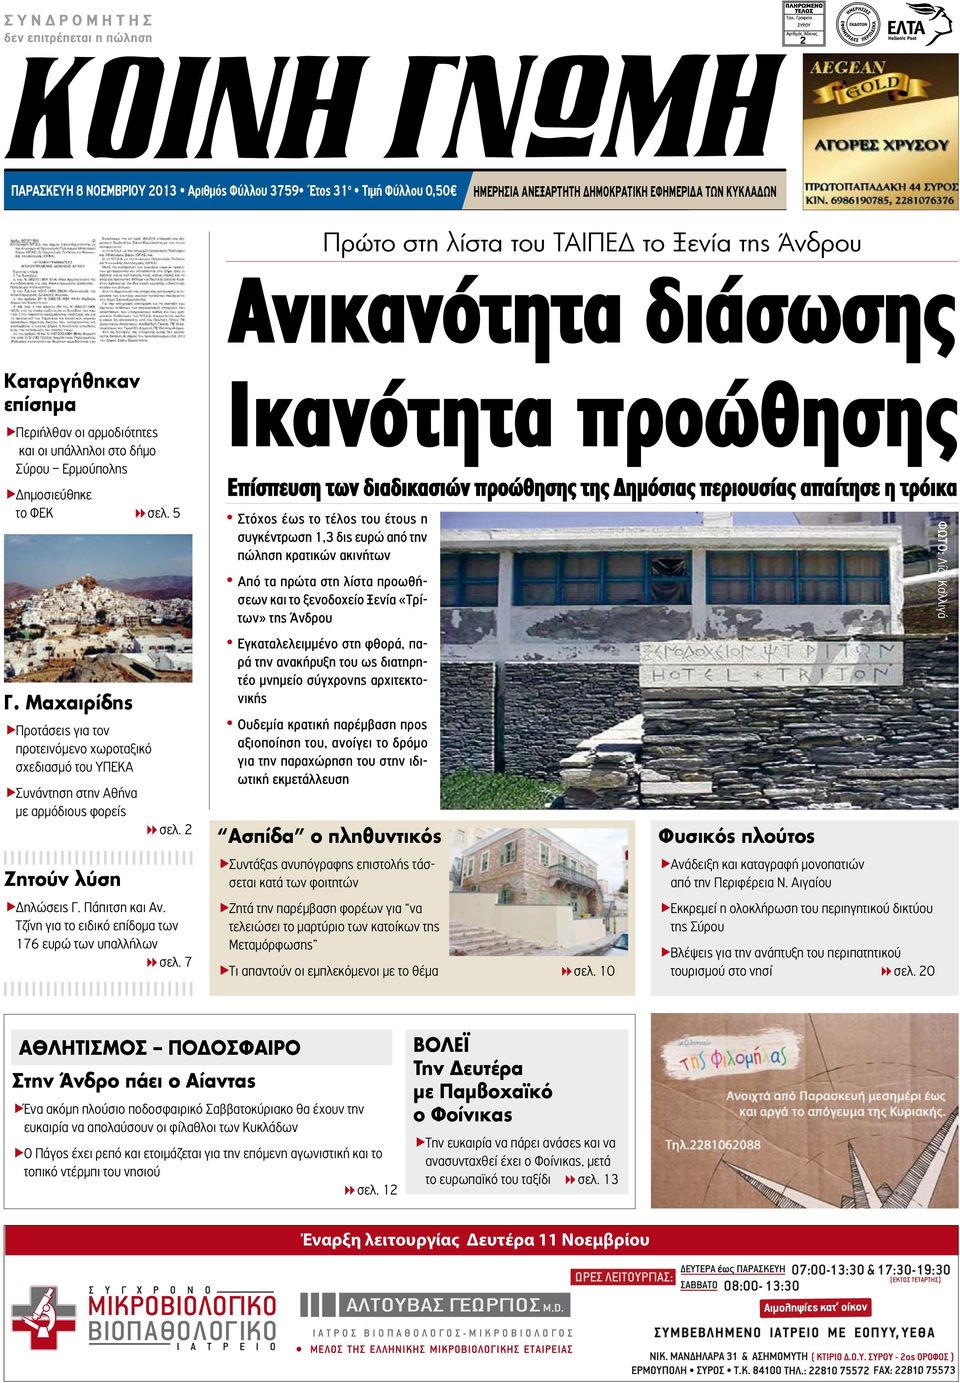 Μαχαιρίδης ÑΠροτάσεις για τον προτεινόμενο χωροταξικό σχεδιασμό του ΥΠΕΚΑ ÑΣυνάντηση στην Αθήνα με αρμόδιους φορείς 8σελ. 2 Ζητούν λύση ÑΔηλώσεις Γ. Πάπιτση και Αν.